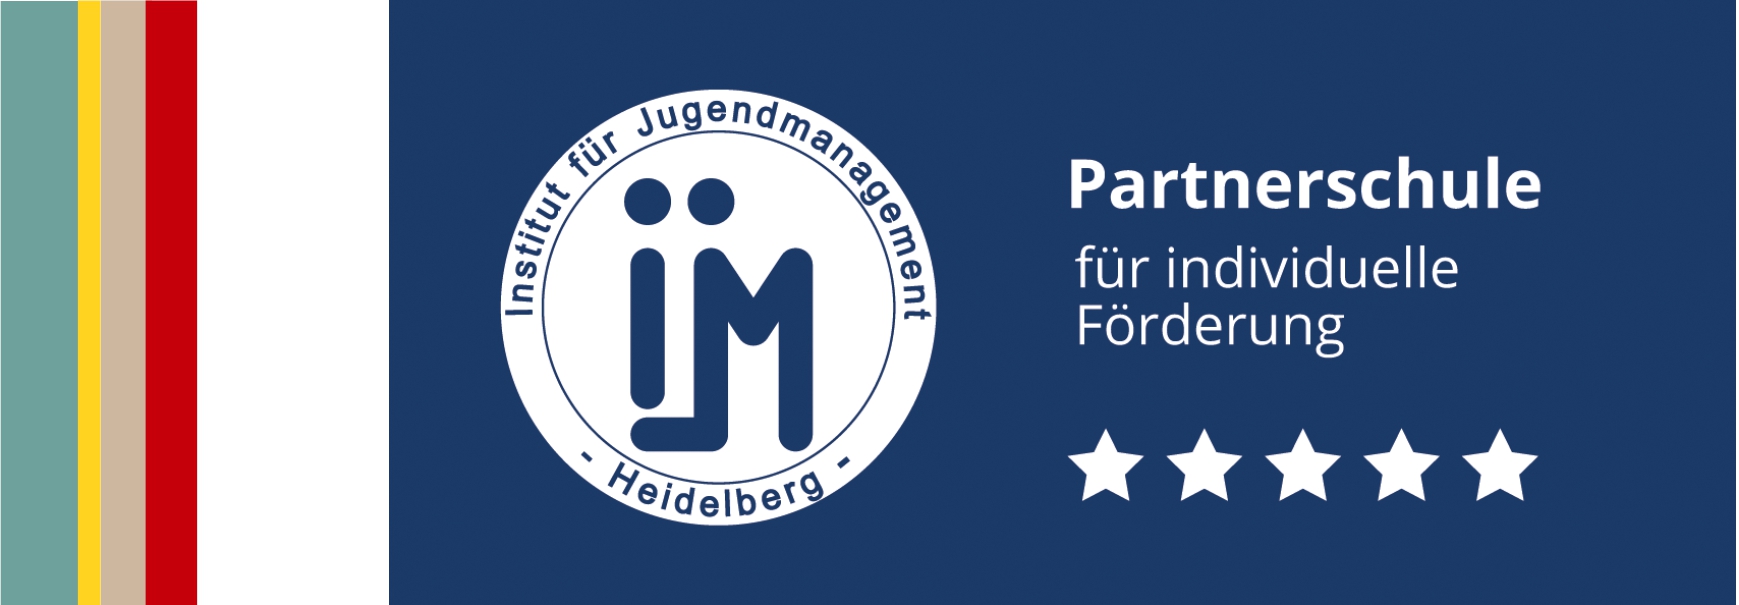 Logo des Instituts für Jugendmanagement Heidelberg